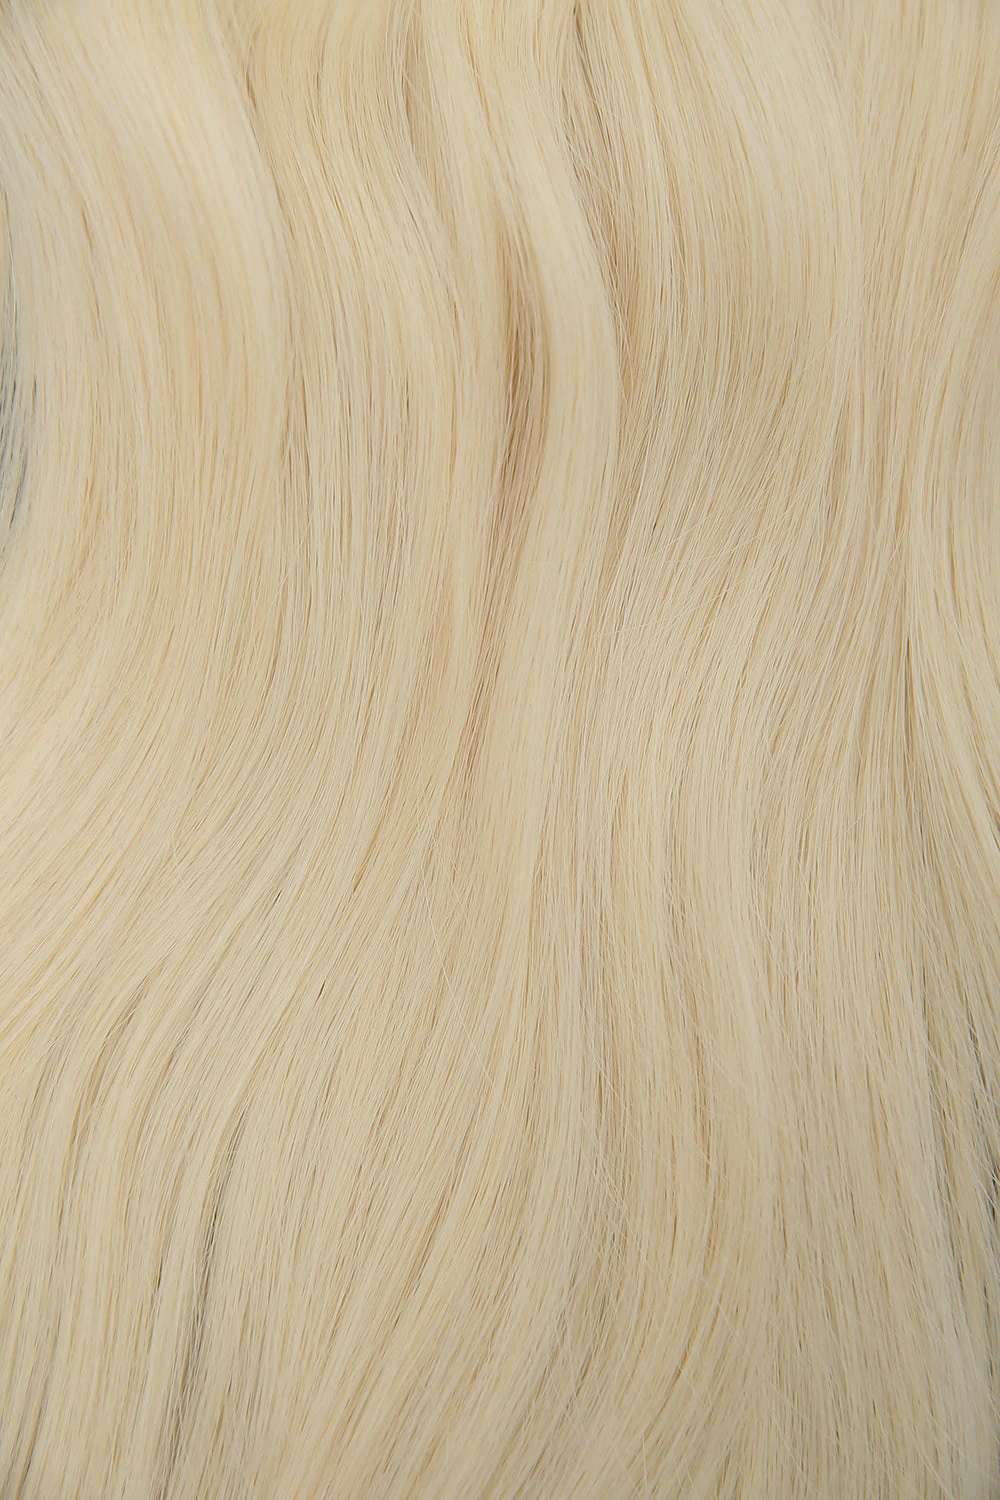 #613 Platinum Blonde Genius Hair Weft Extensions